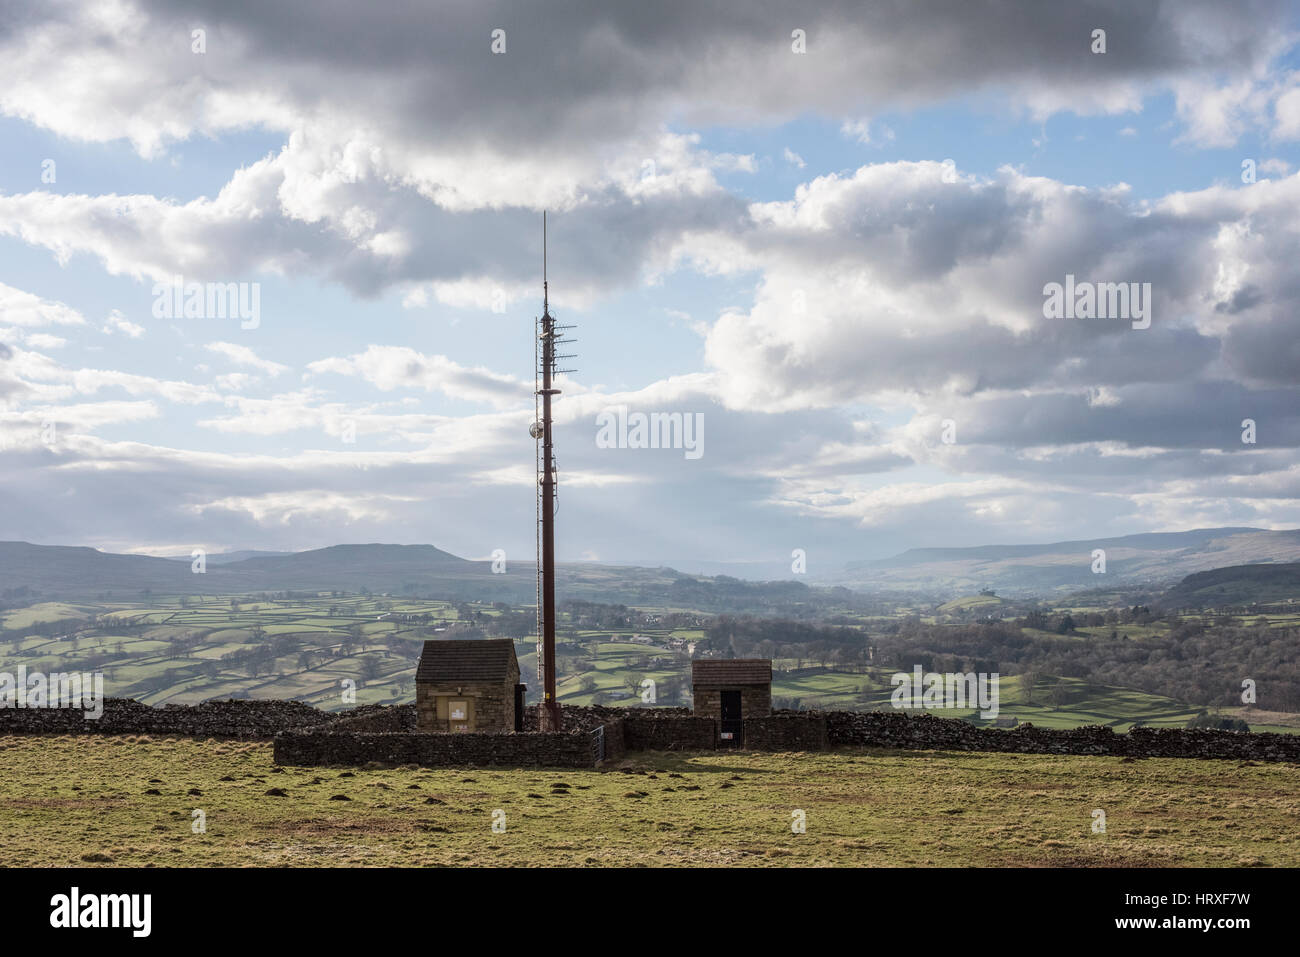 Telekommunikation (Handy) Mast auf Penhill, mit Blick auf Wensleydale, Yorkshire Dales. Handy-Empfang kann in hügeligen, ländlichen Gebieten lückenhaft sein. Stockfoto